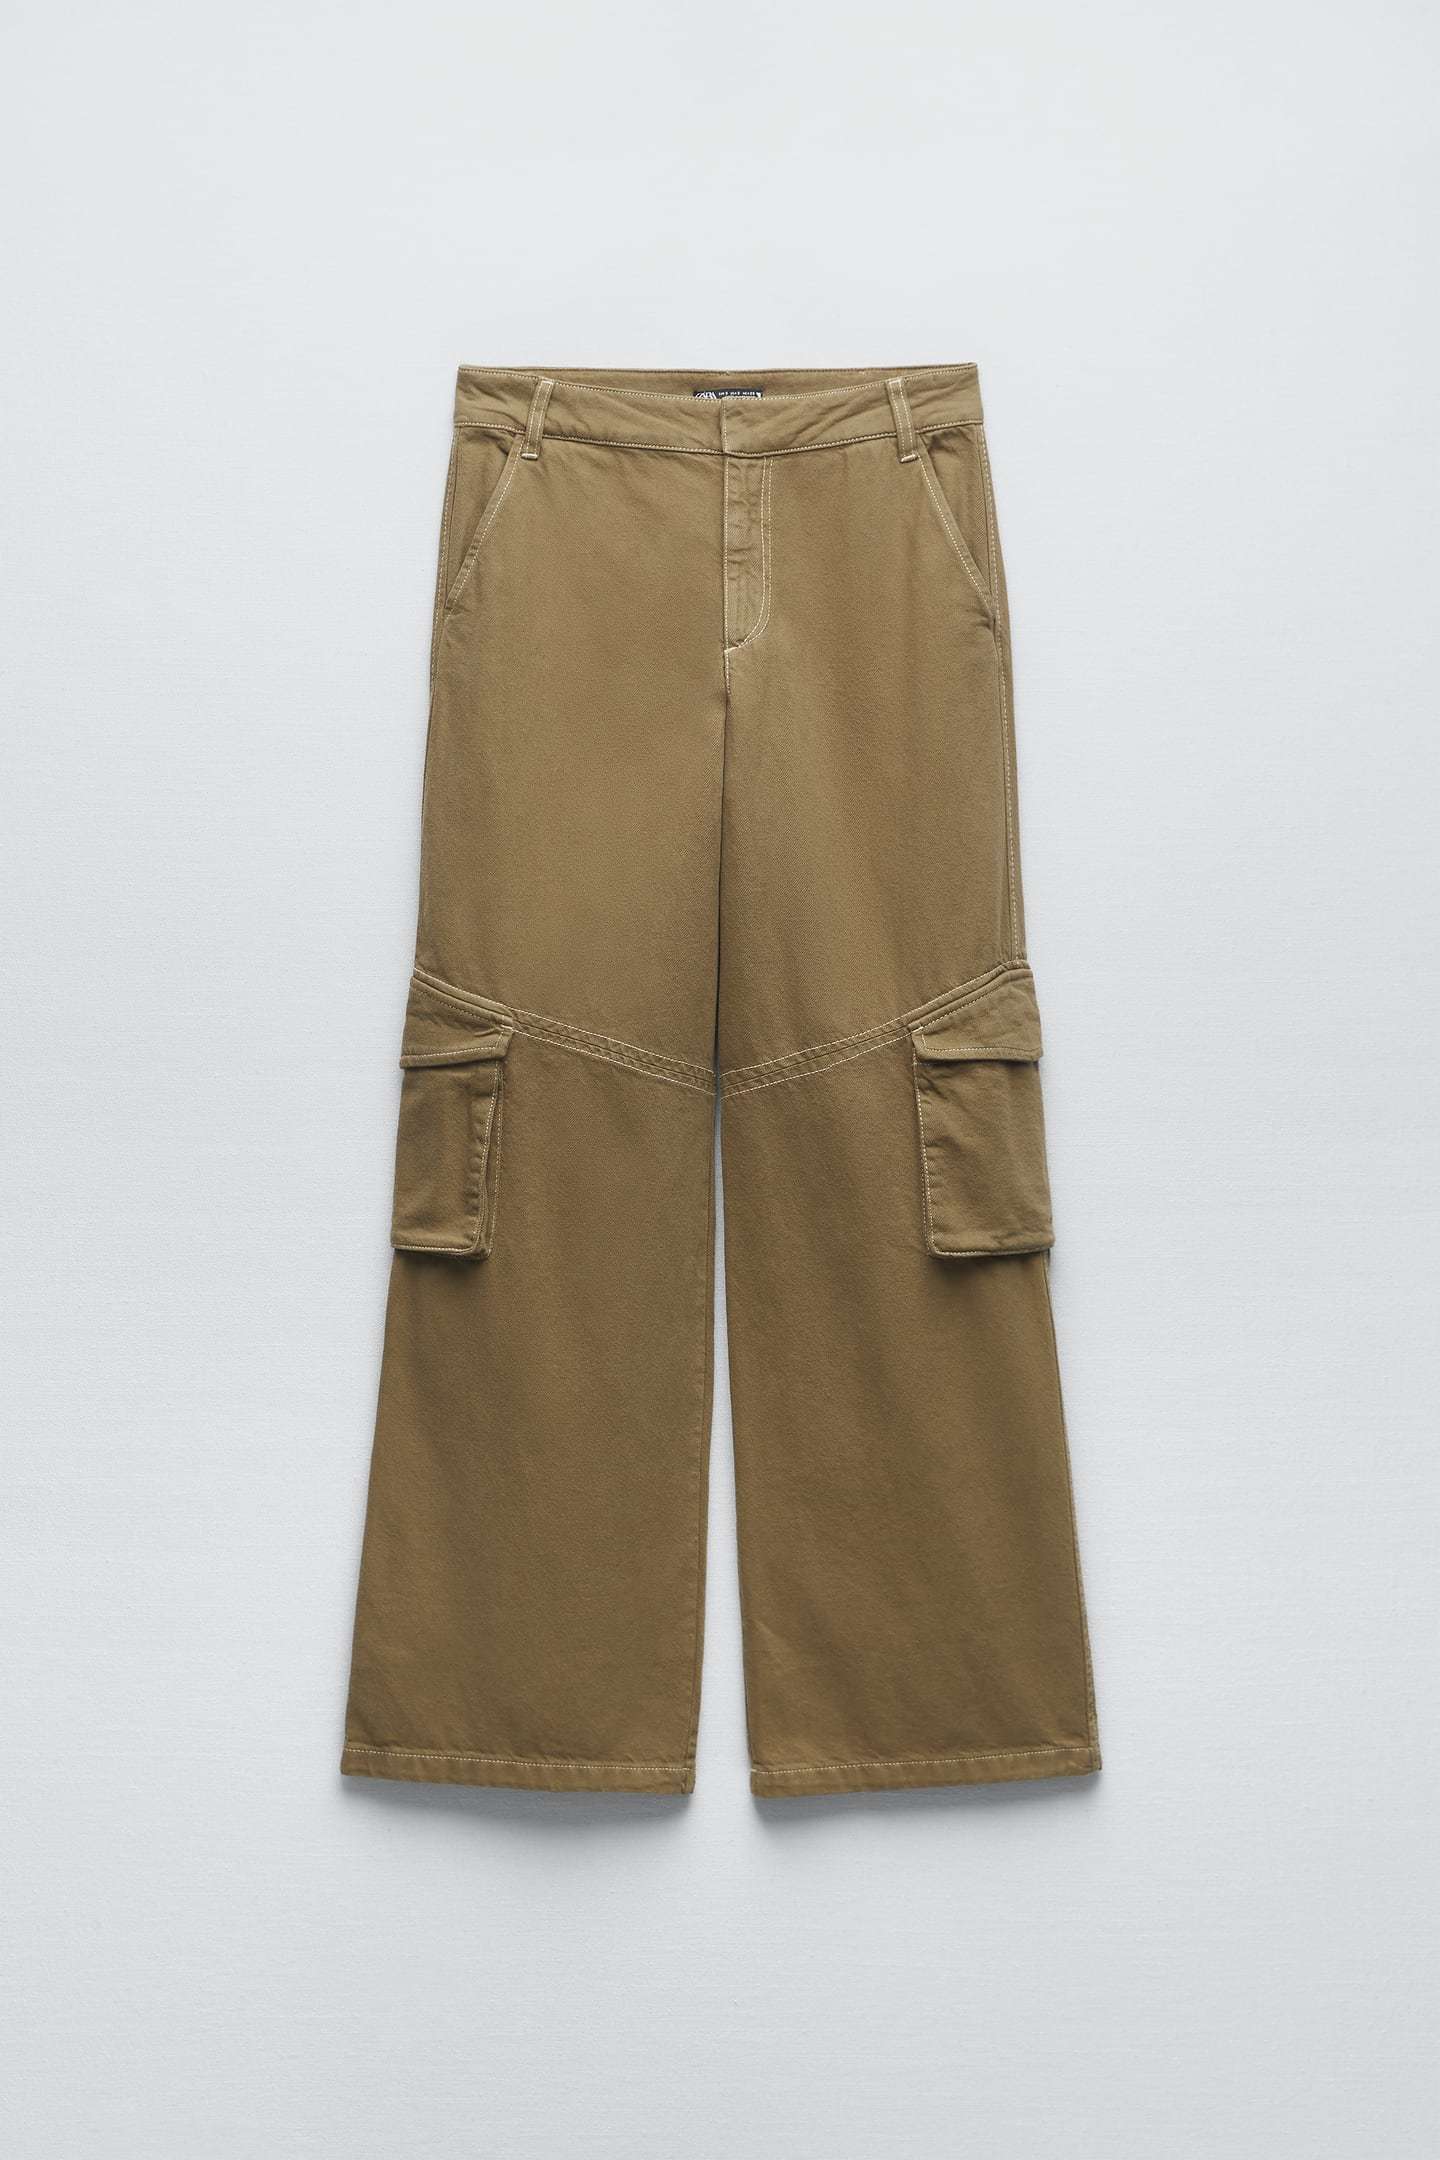 Pantalón cargo de Zara (39,95 euros).